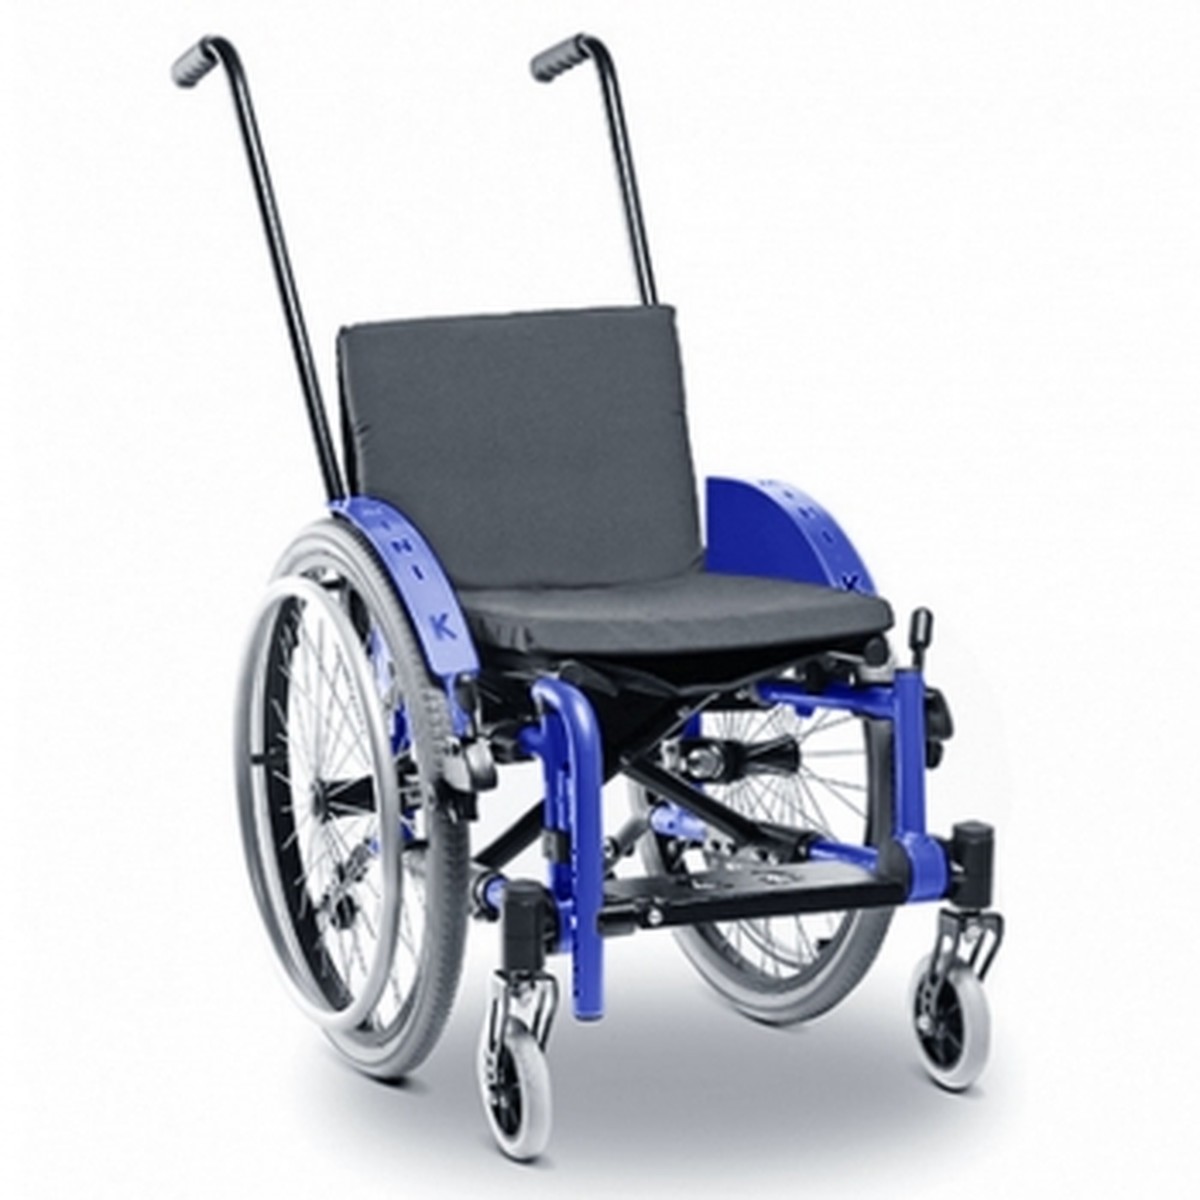 Foto do produto Cadeira de rodas Mini K até 70 kg